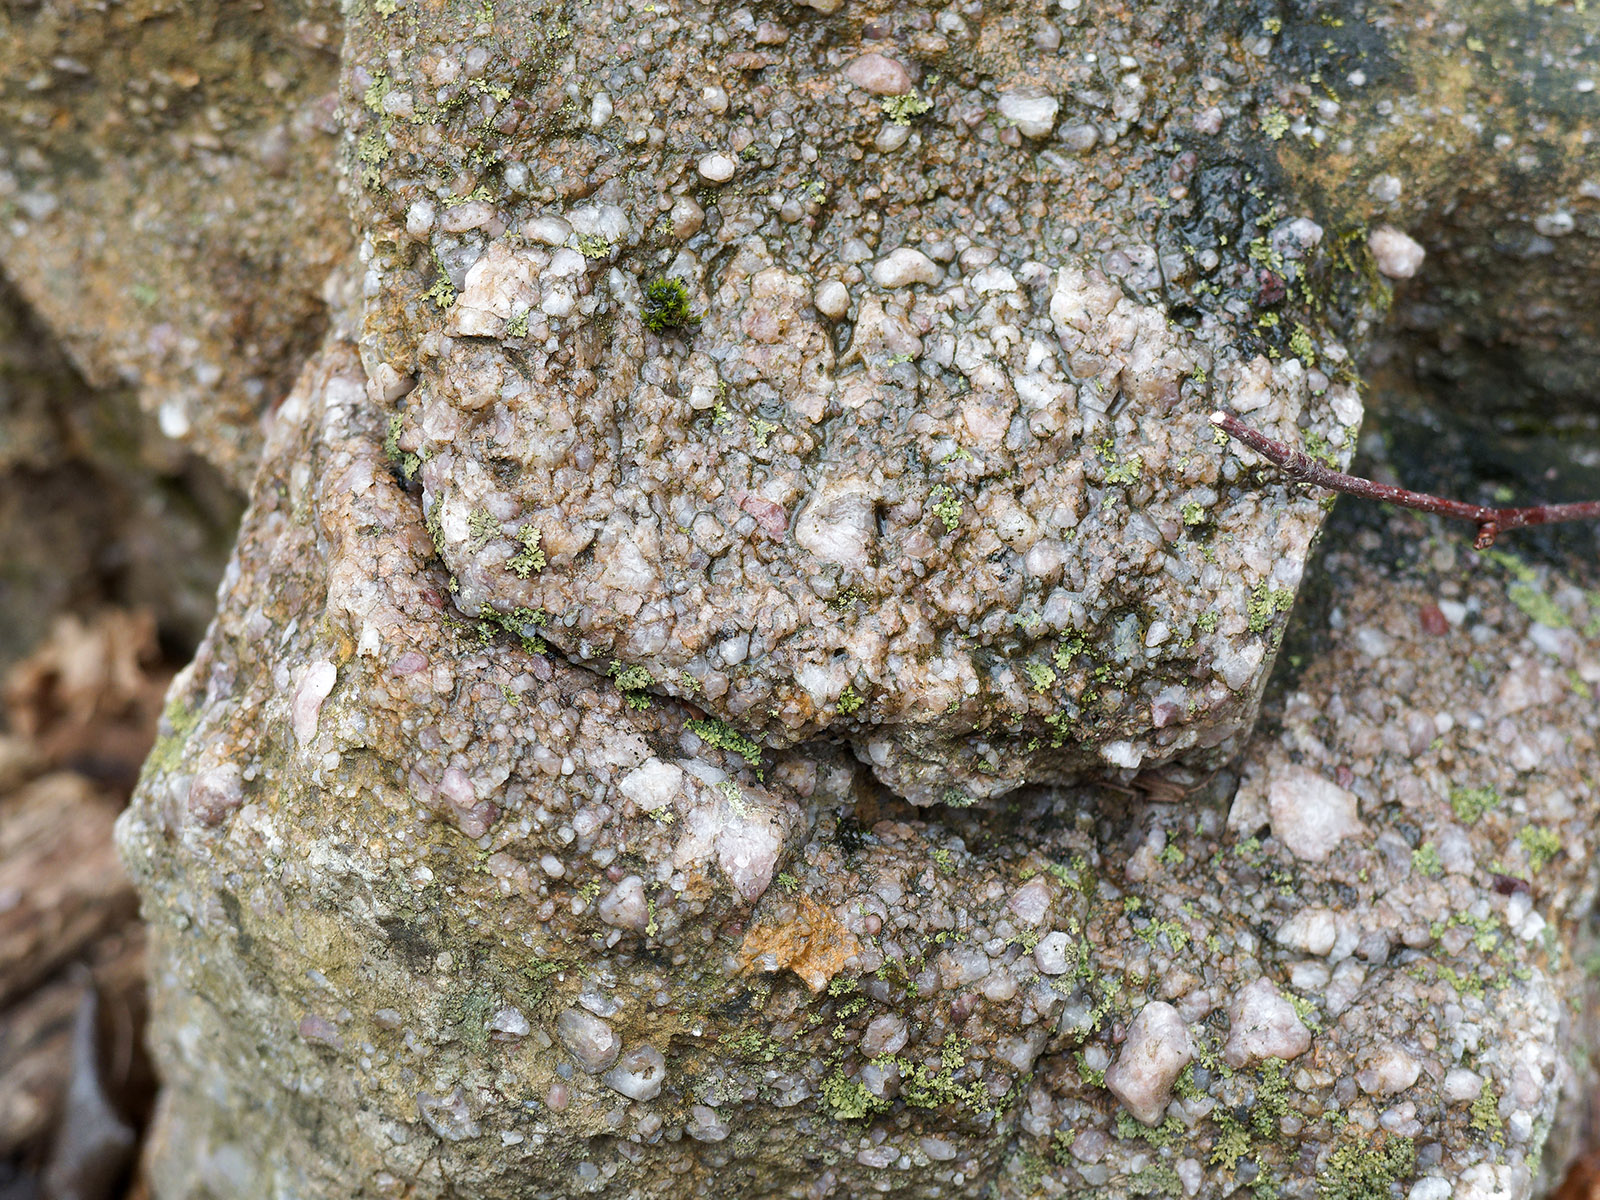 Closer view of coarse quartz pebble conglomerate.